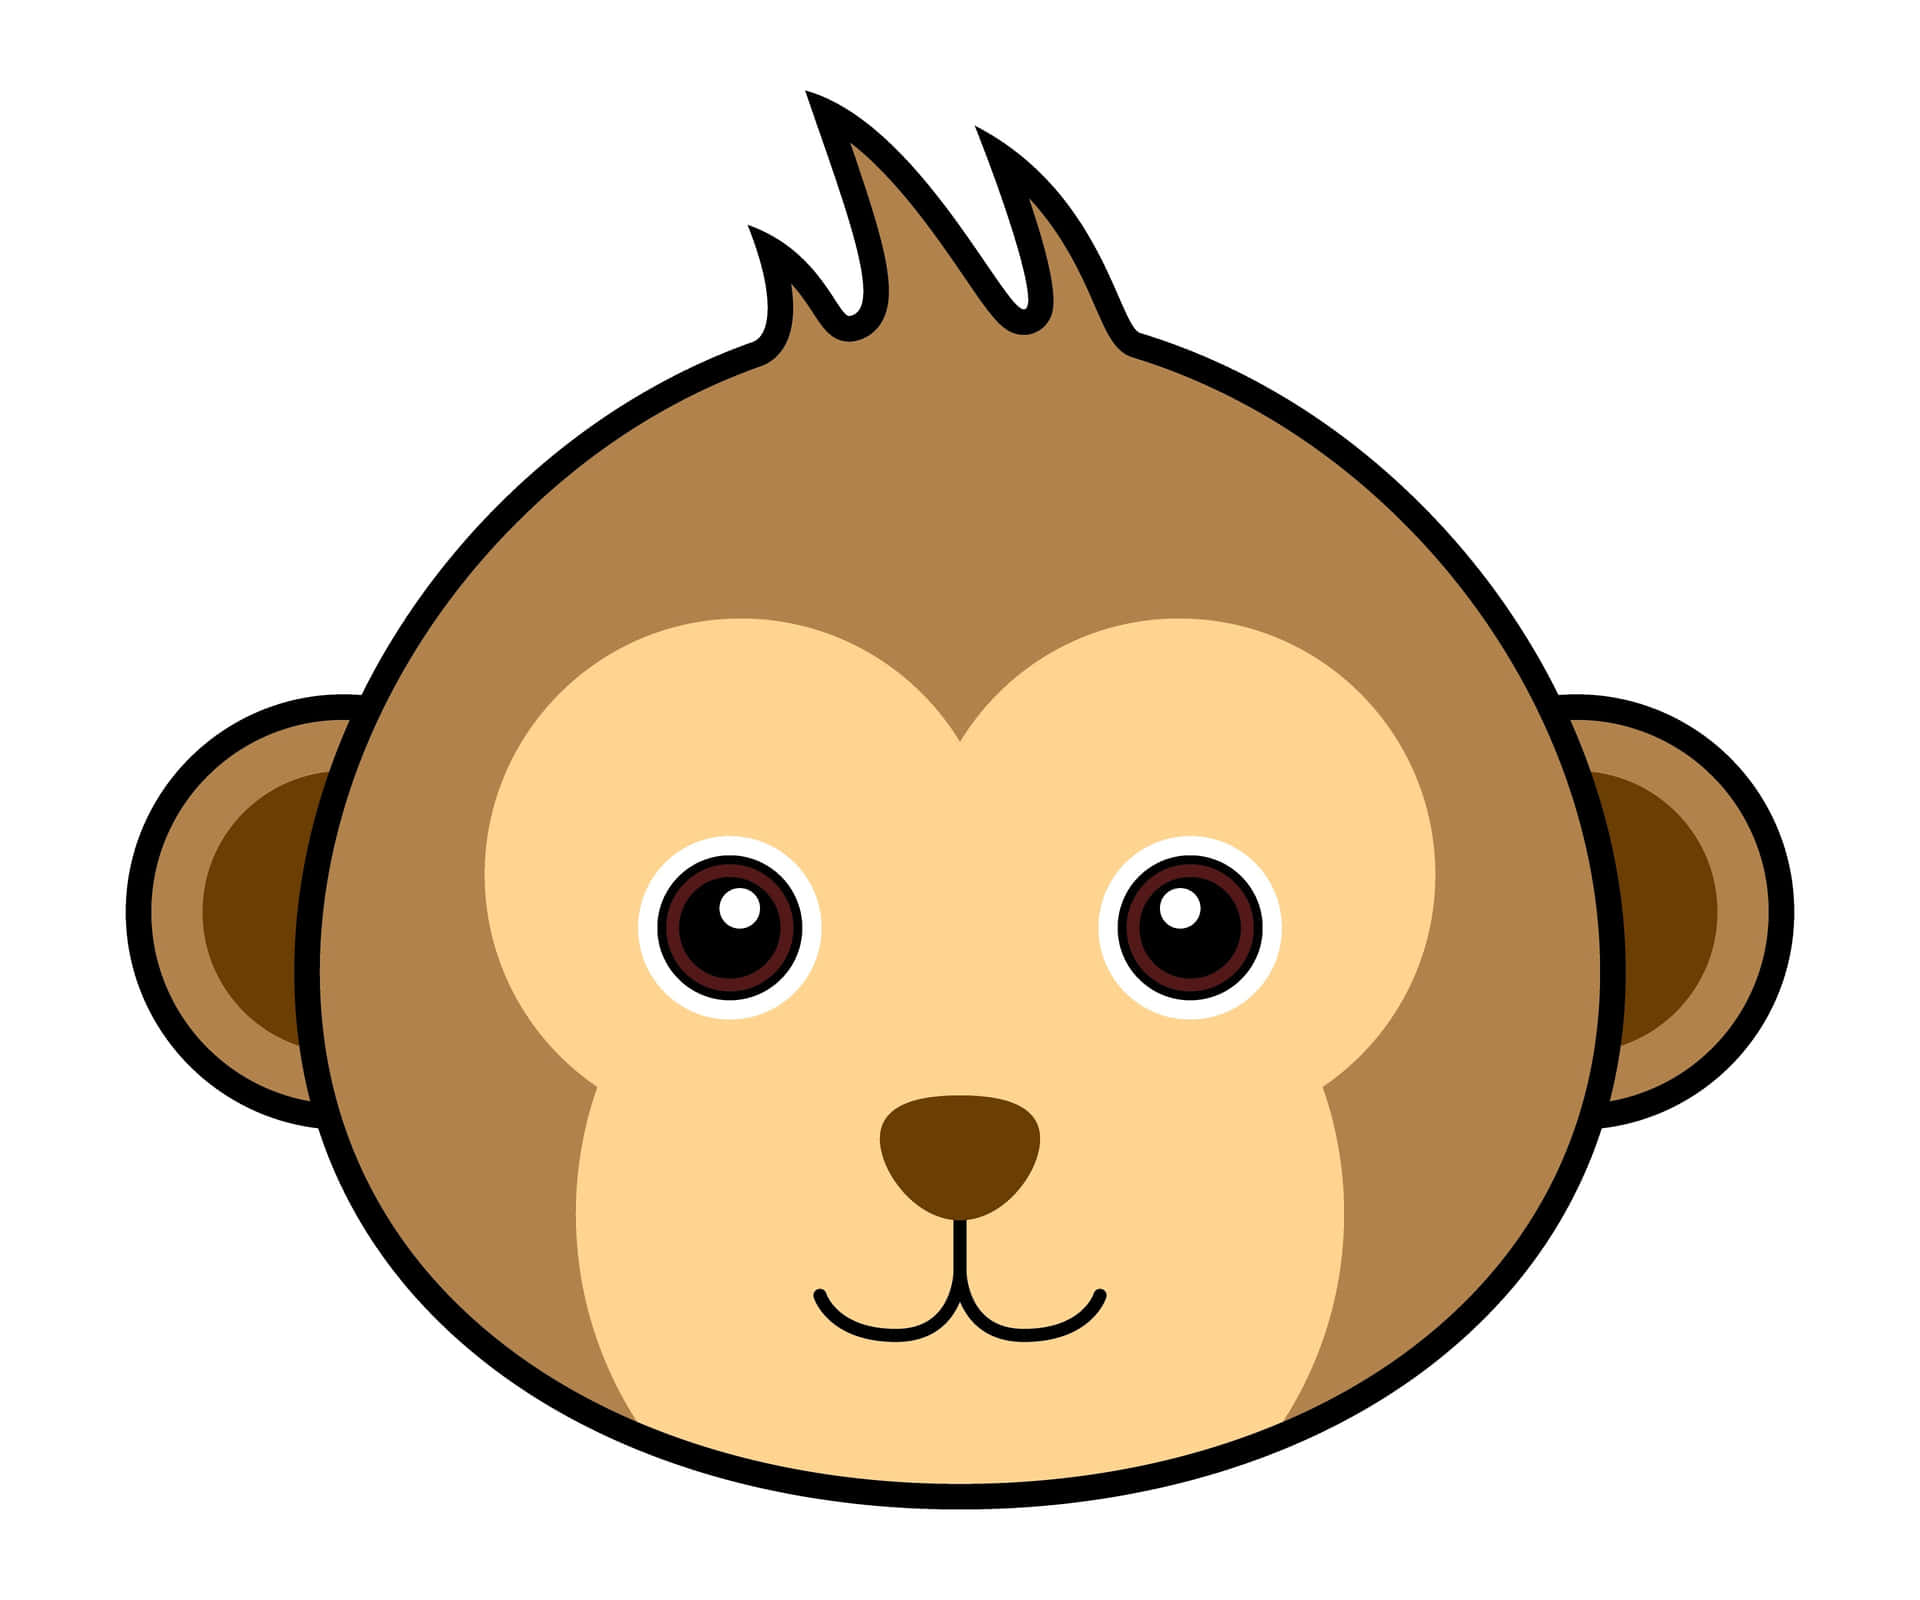 ¡diviértetecon Este Divertido Dibujo Animado De Un Mono!